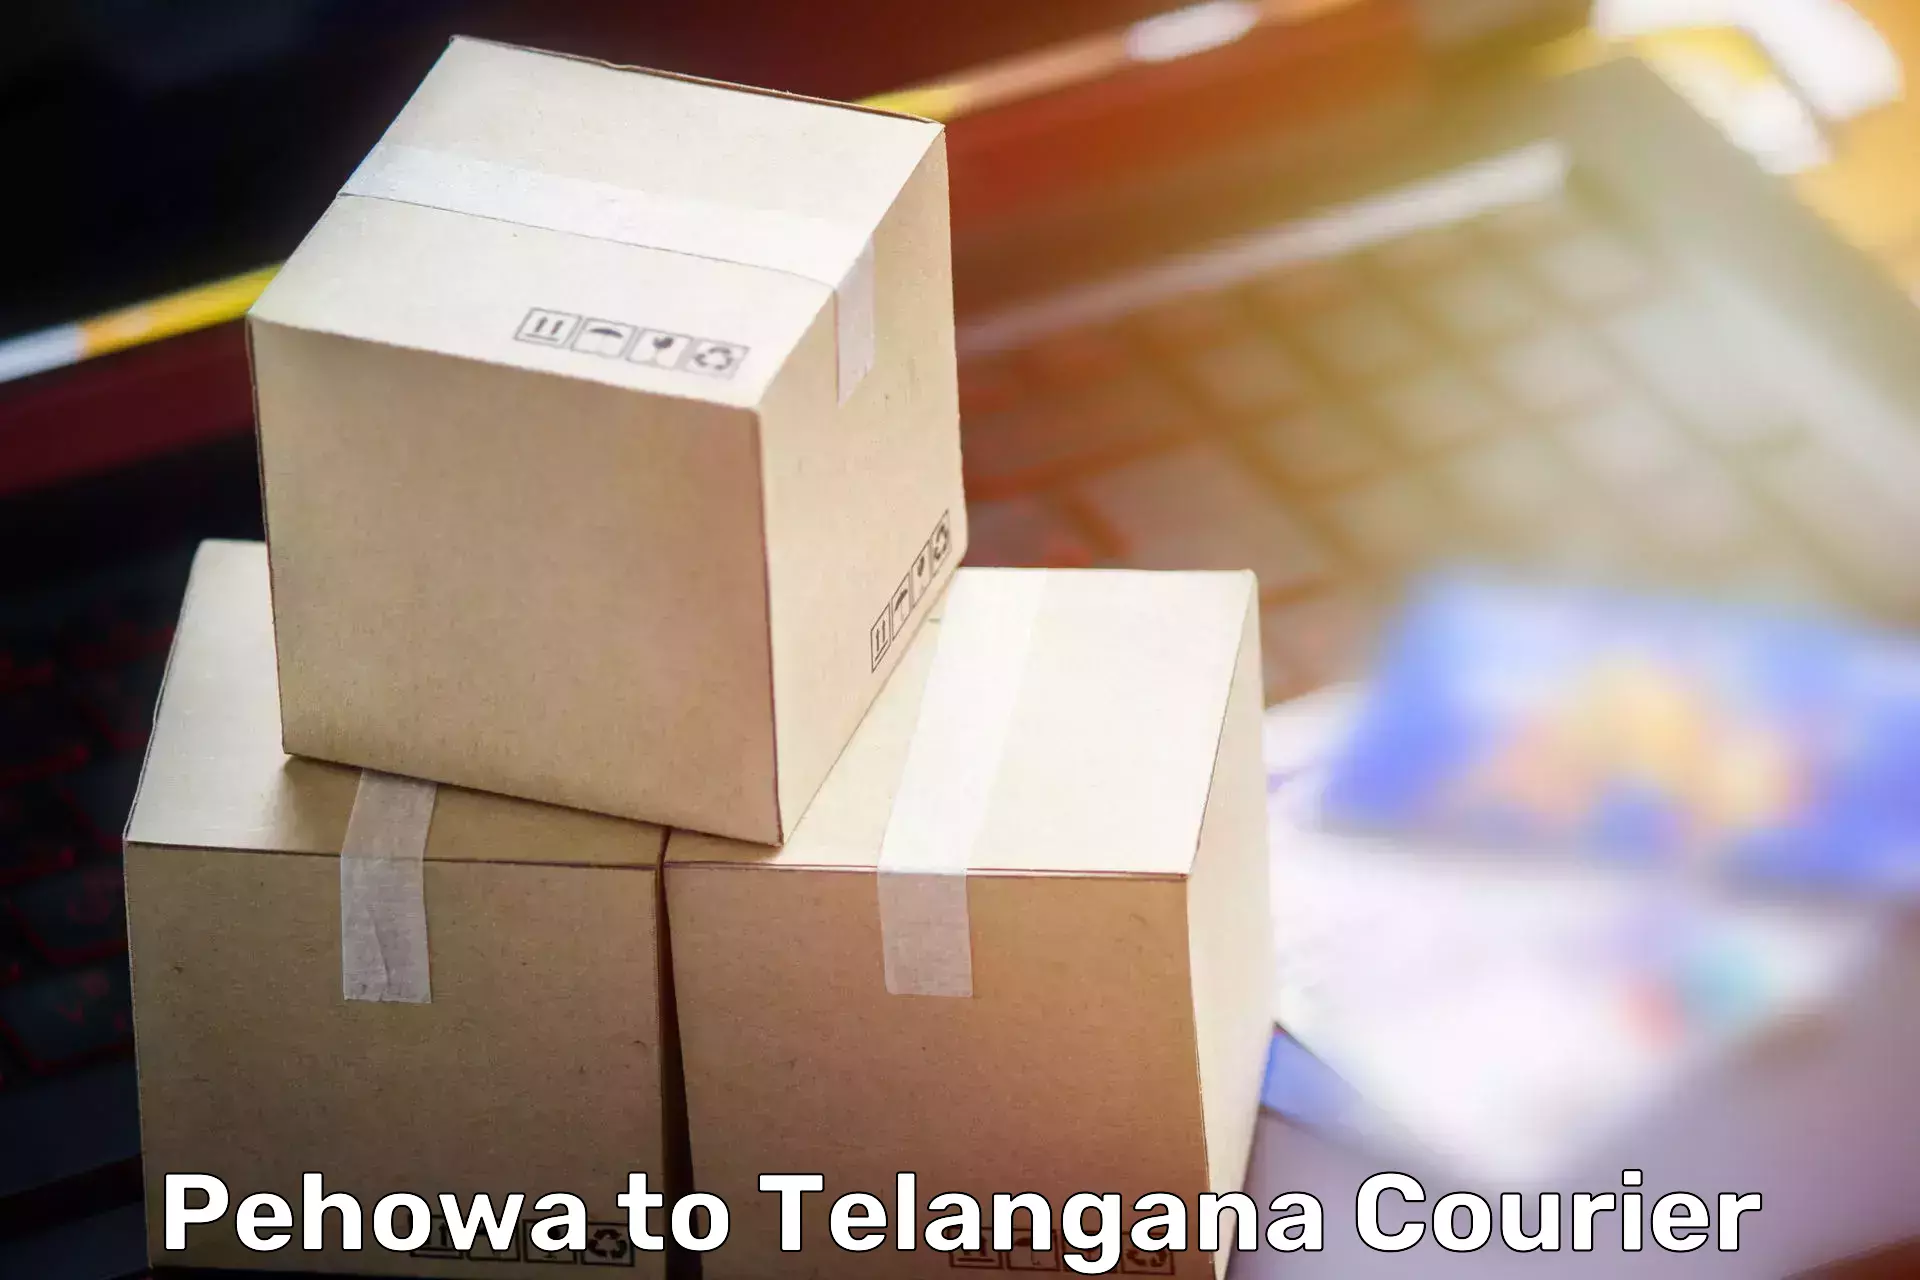 Professional packing services Pehowa to Kothakota